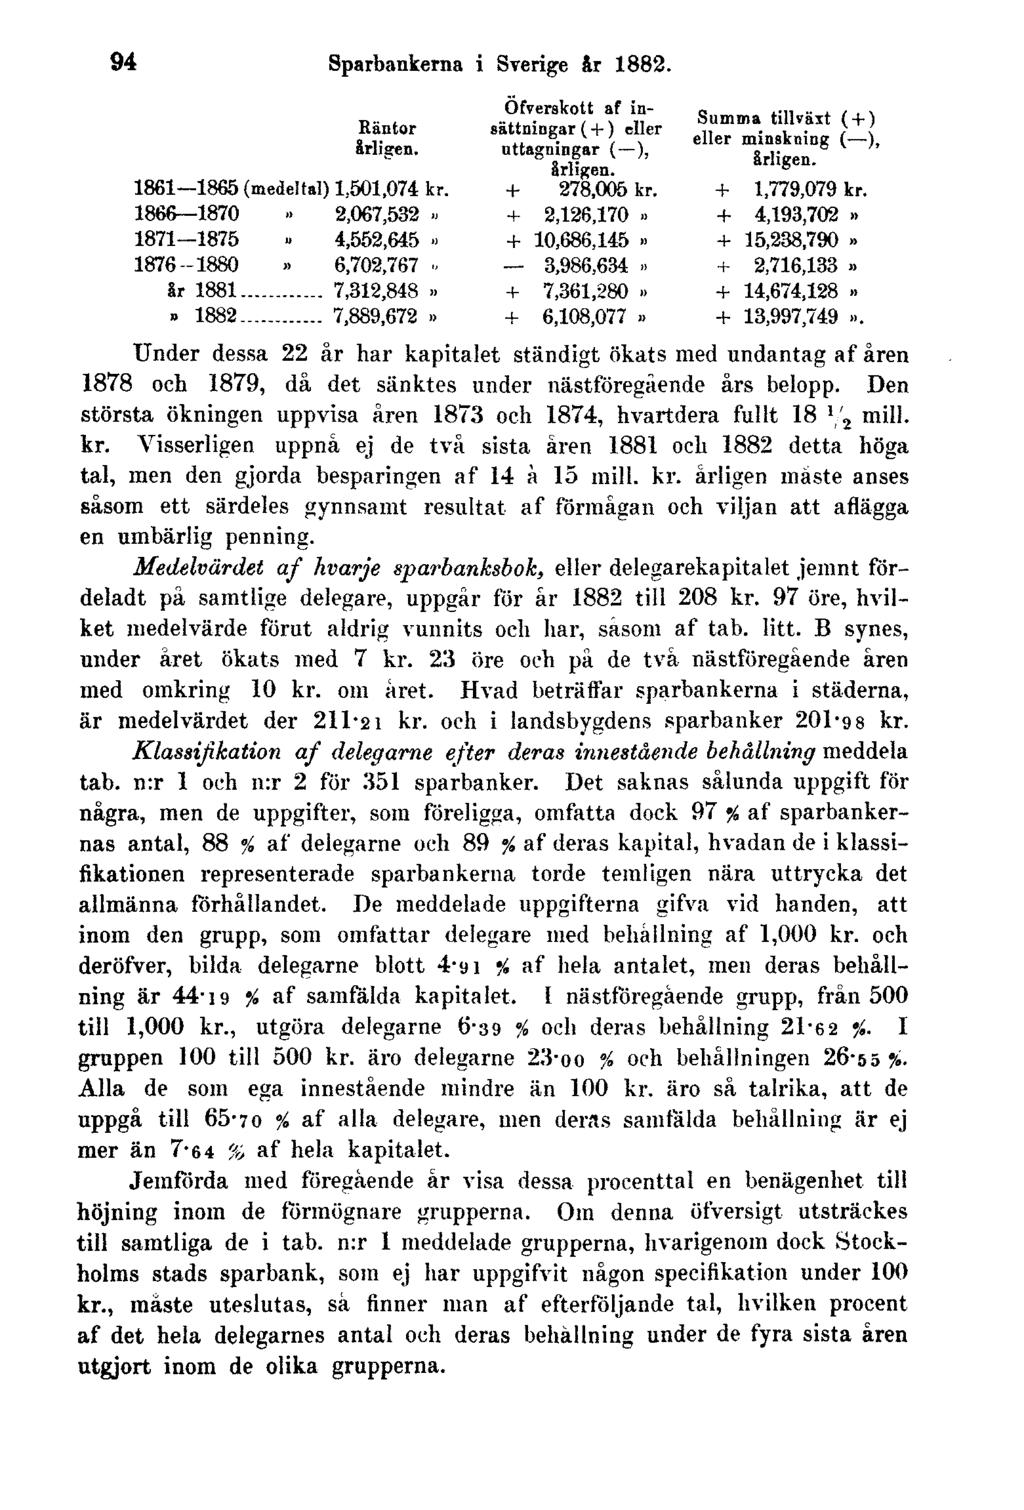 94 Sparbankerna i Sverige år 1882. Under dessa 22 år har kapitalet ständigt ökats med undantag af åren 1878 och 1879, då det sänktes under nästföregående års belopp.